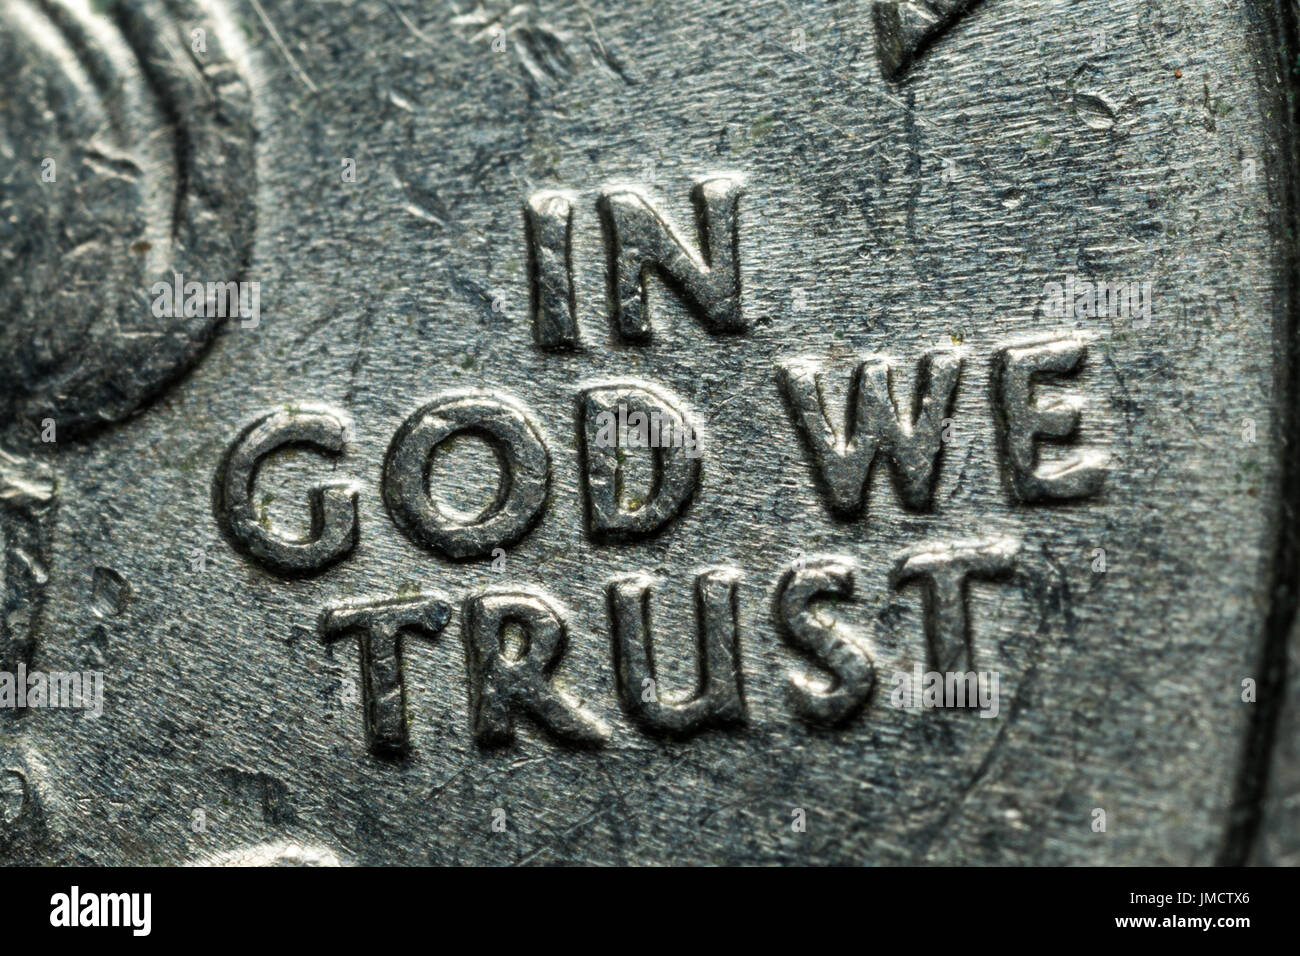 160 IN GOD WE TRUST ideas - in god we trust, god, trust